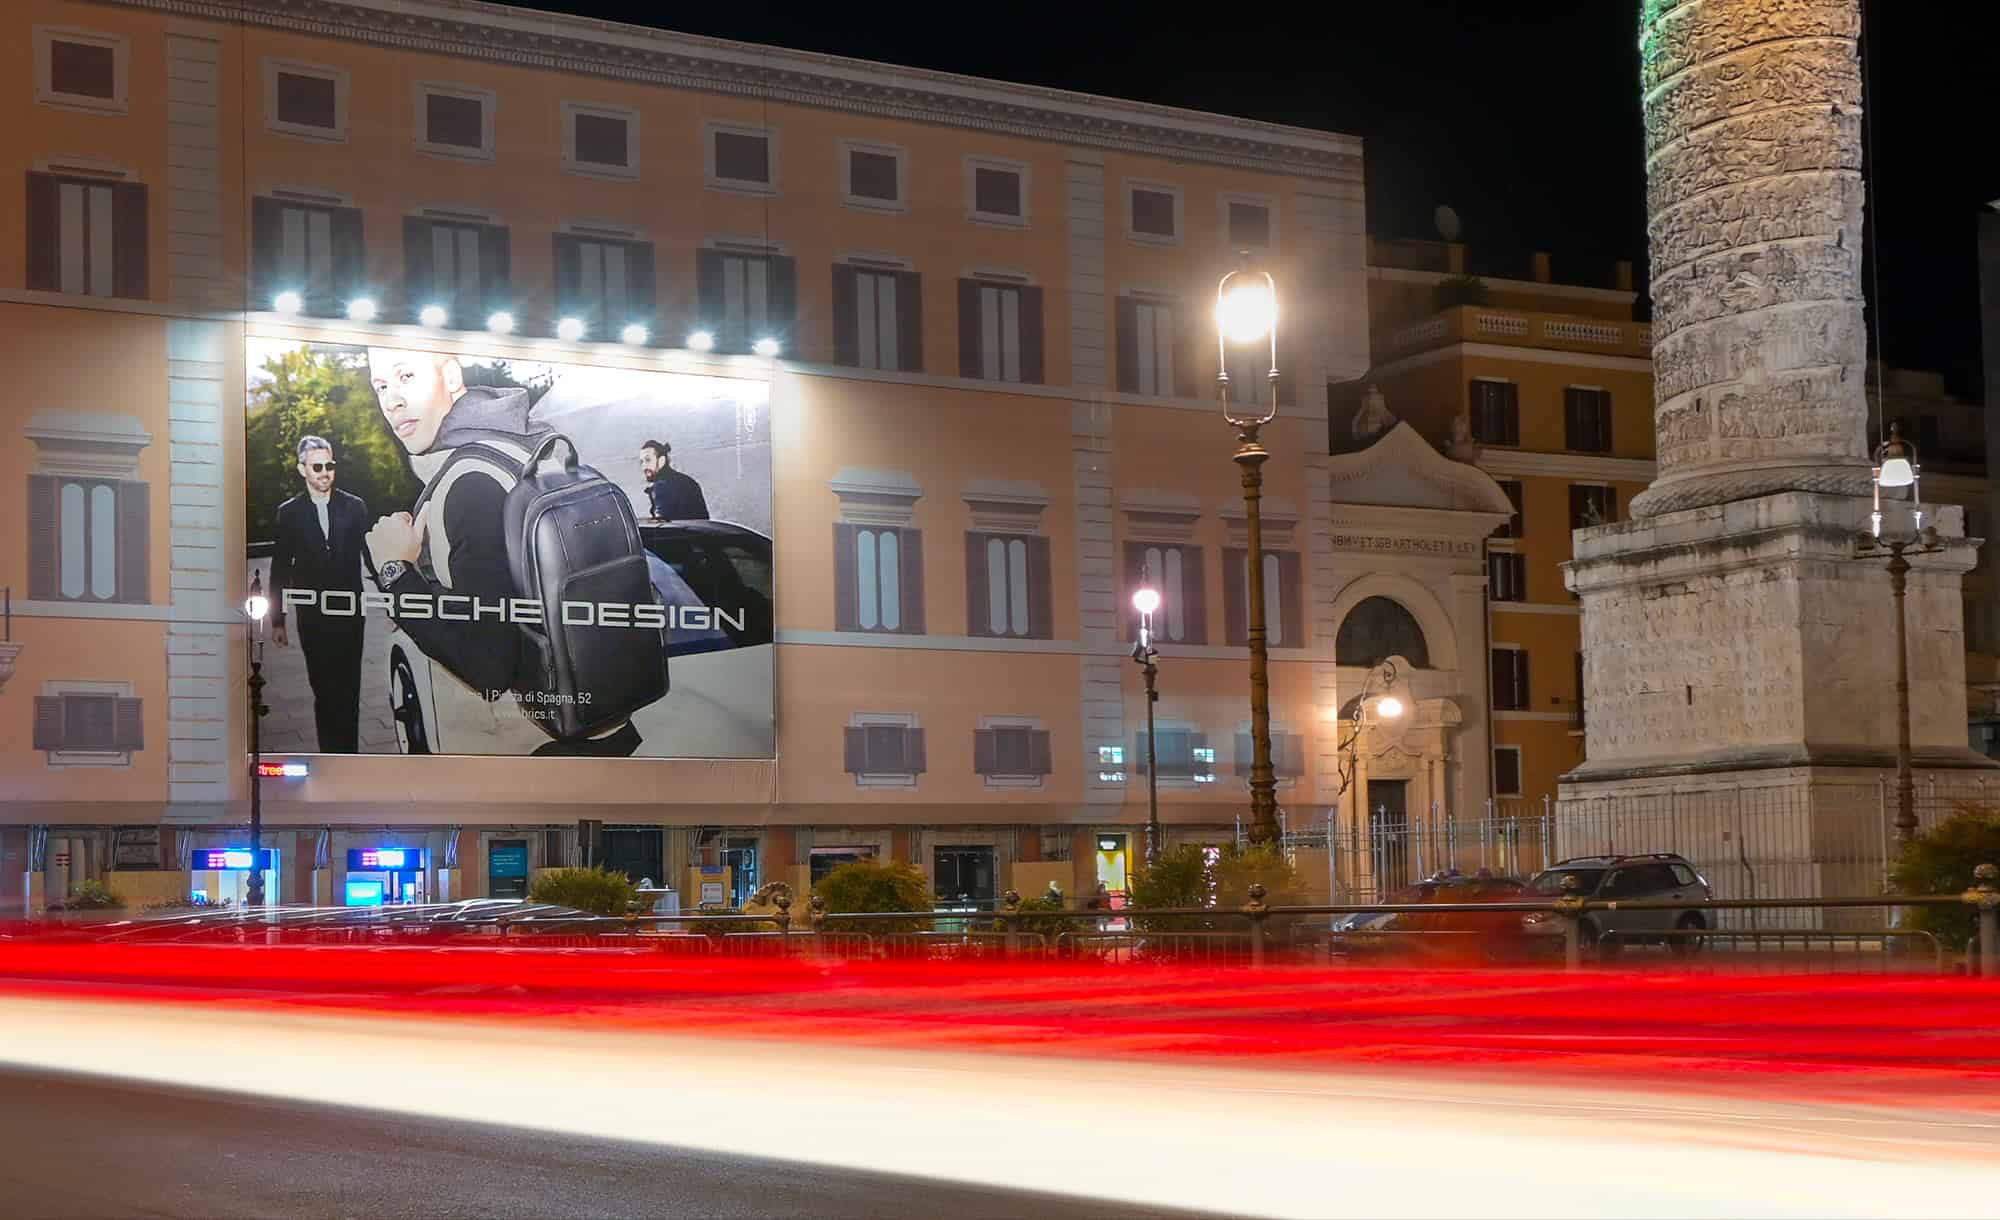 Maxi Affissione a Roma in Piazza Colonna con Porsche (Automotive)